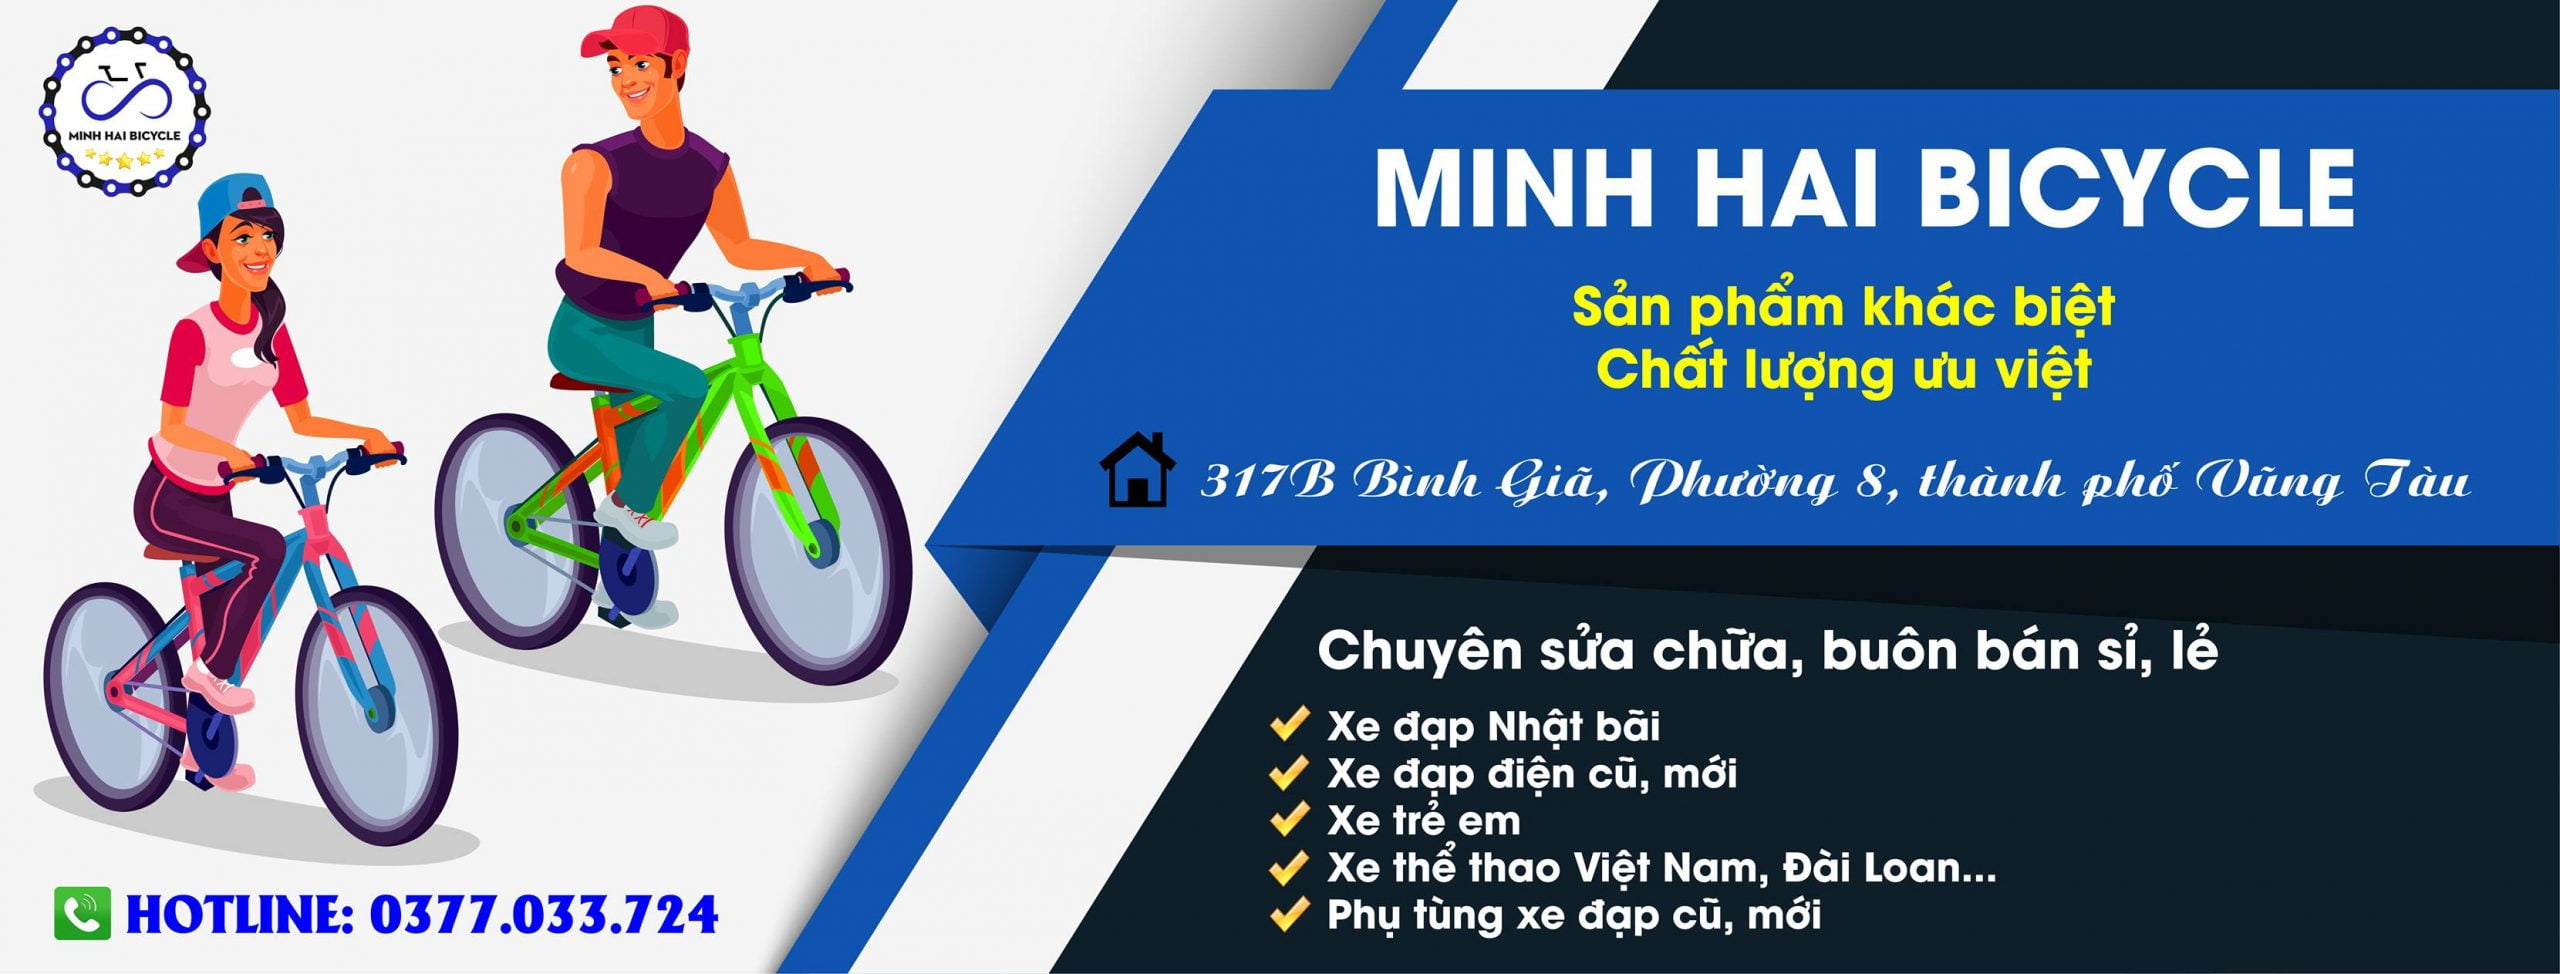 Cửa hàng xe đạp Minh Hải chuyên phân phối, cung cấp đa dạng mẫu mã xe đạp nhật bãi chất lượng hàng đầu